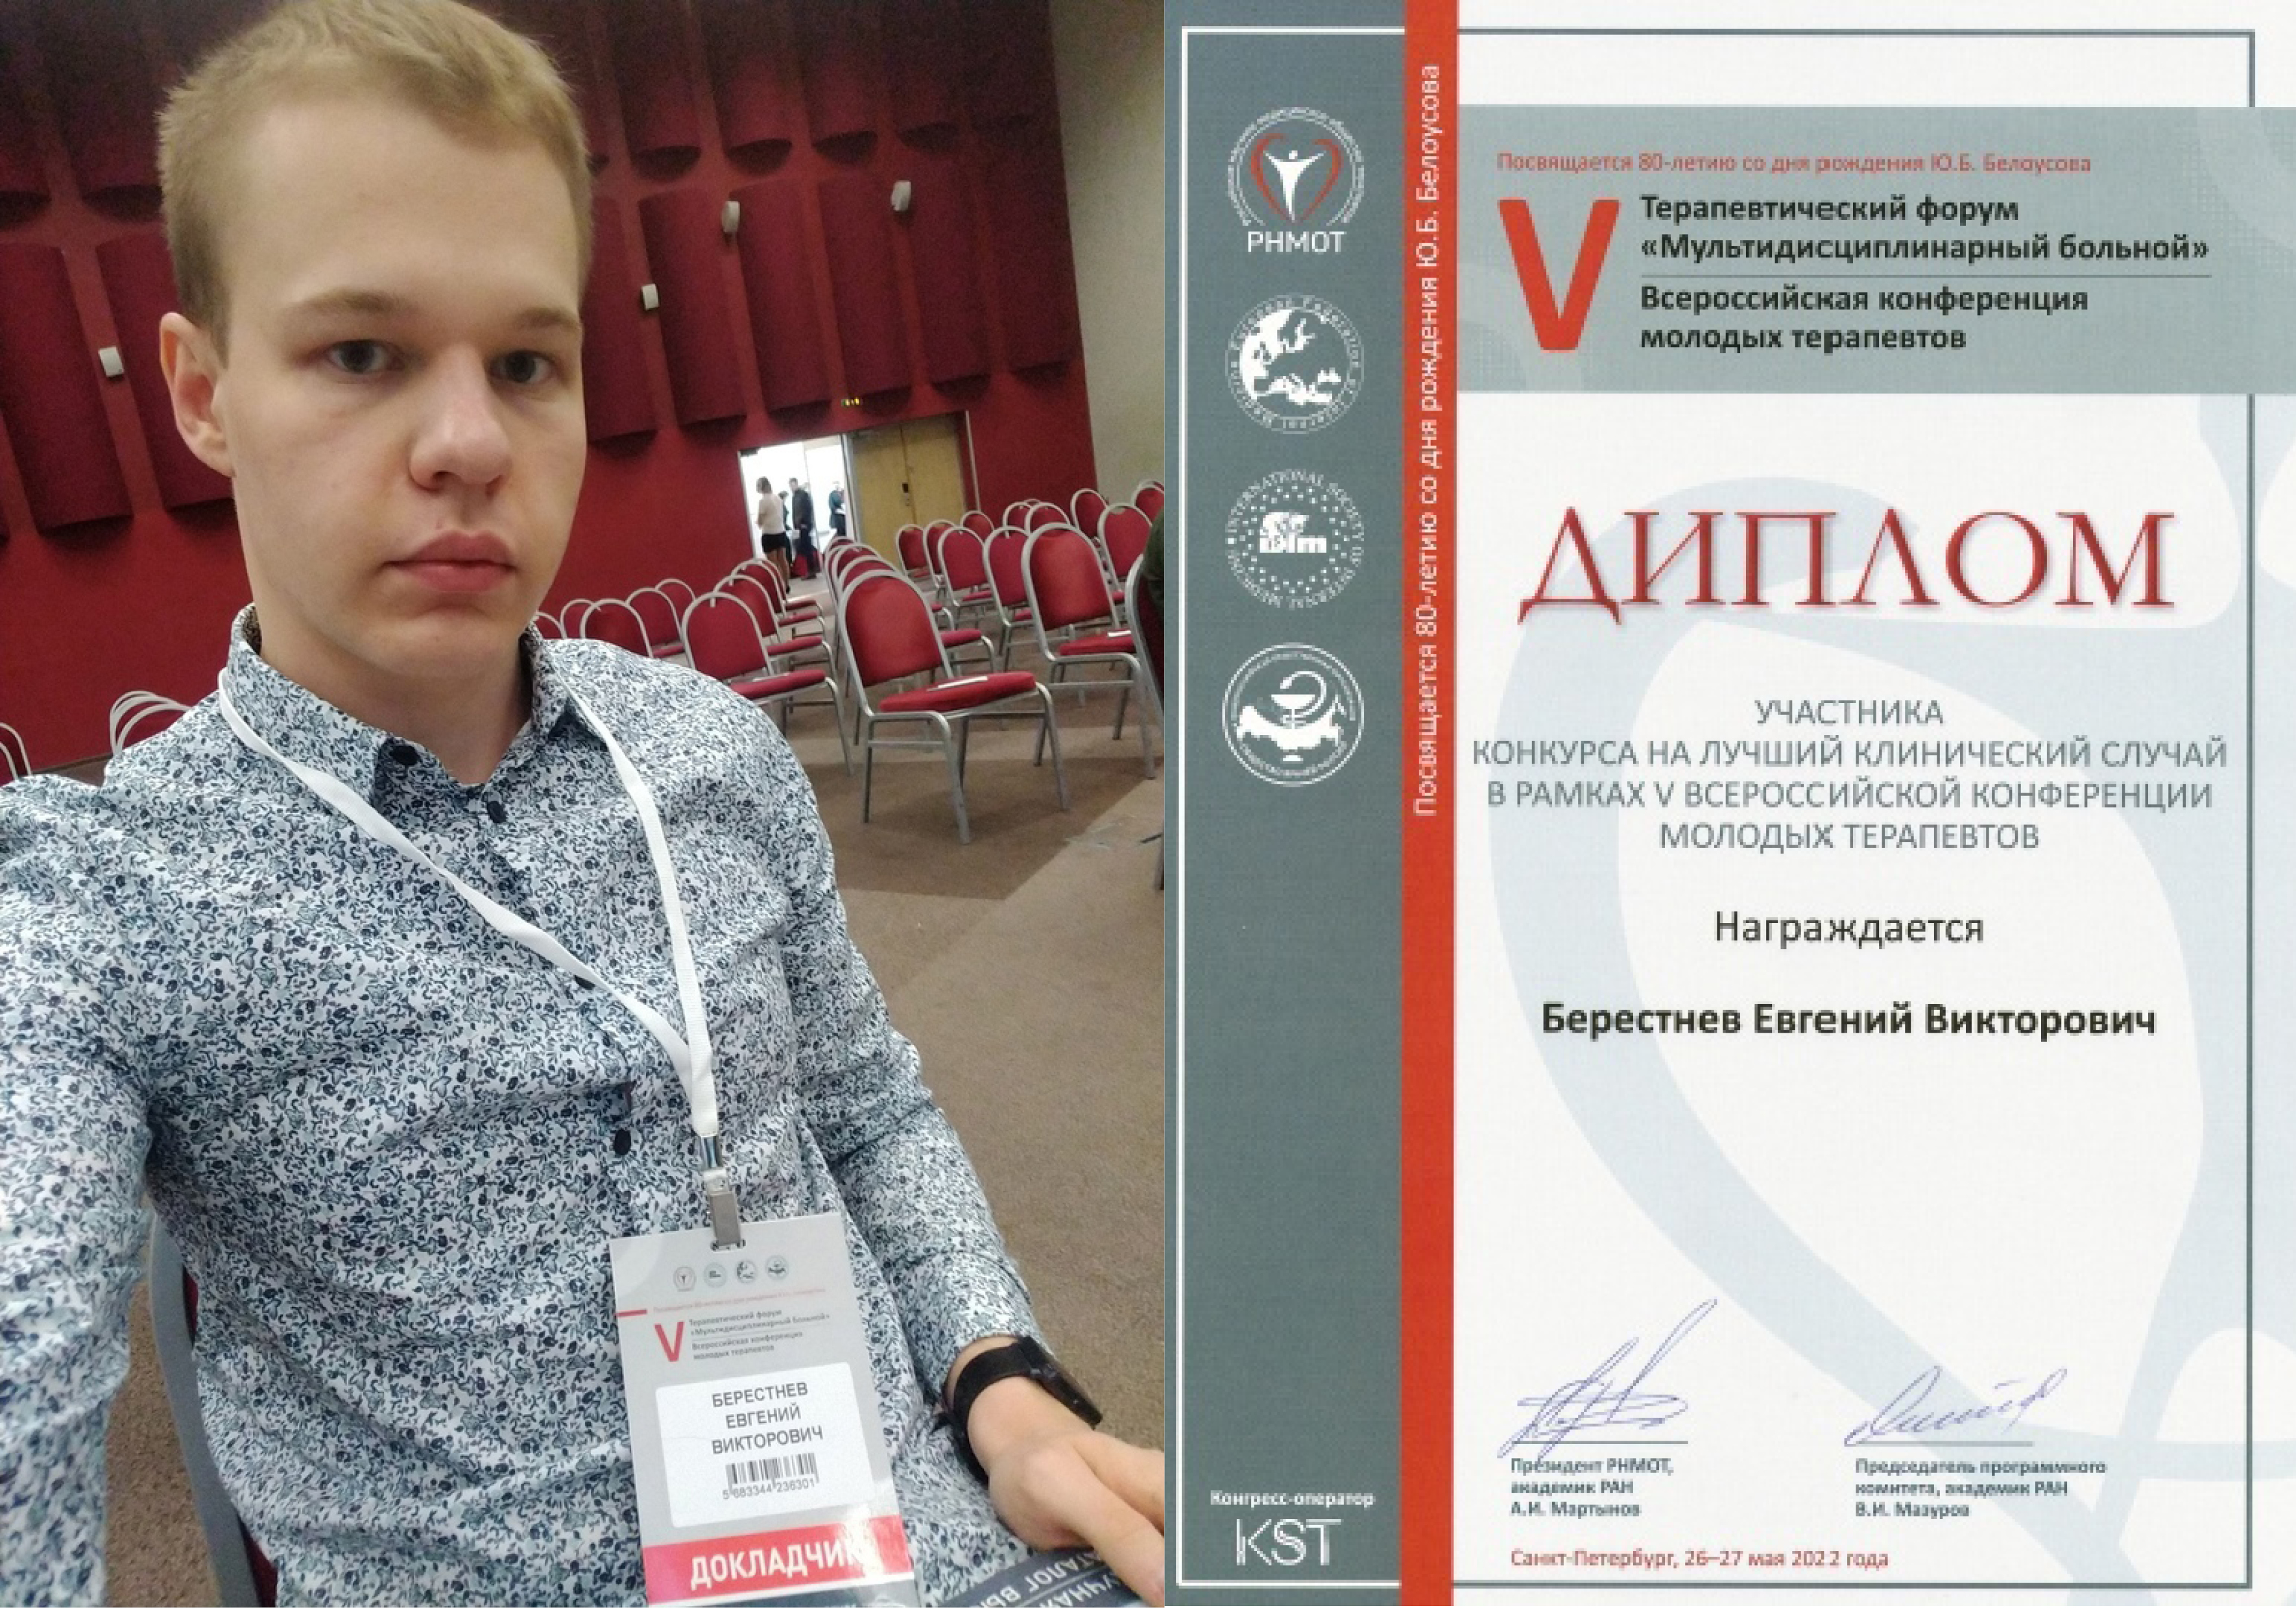 Студент Мединститута представил редкий клинический случай на Всероссийской конференции молодых терапевтов